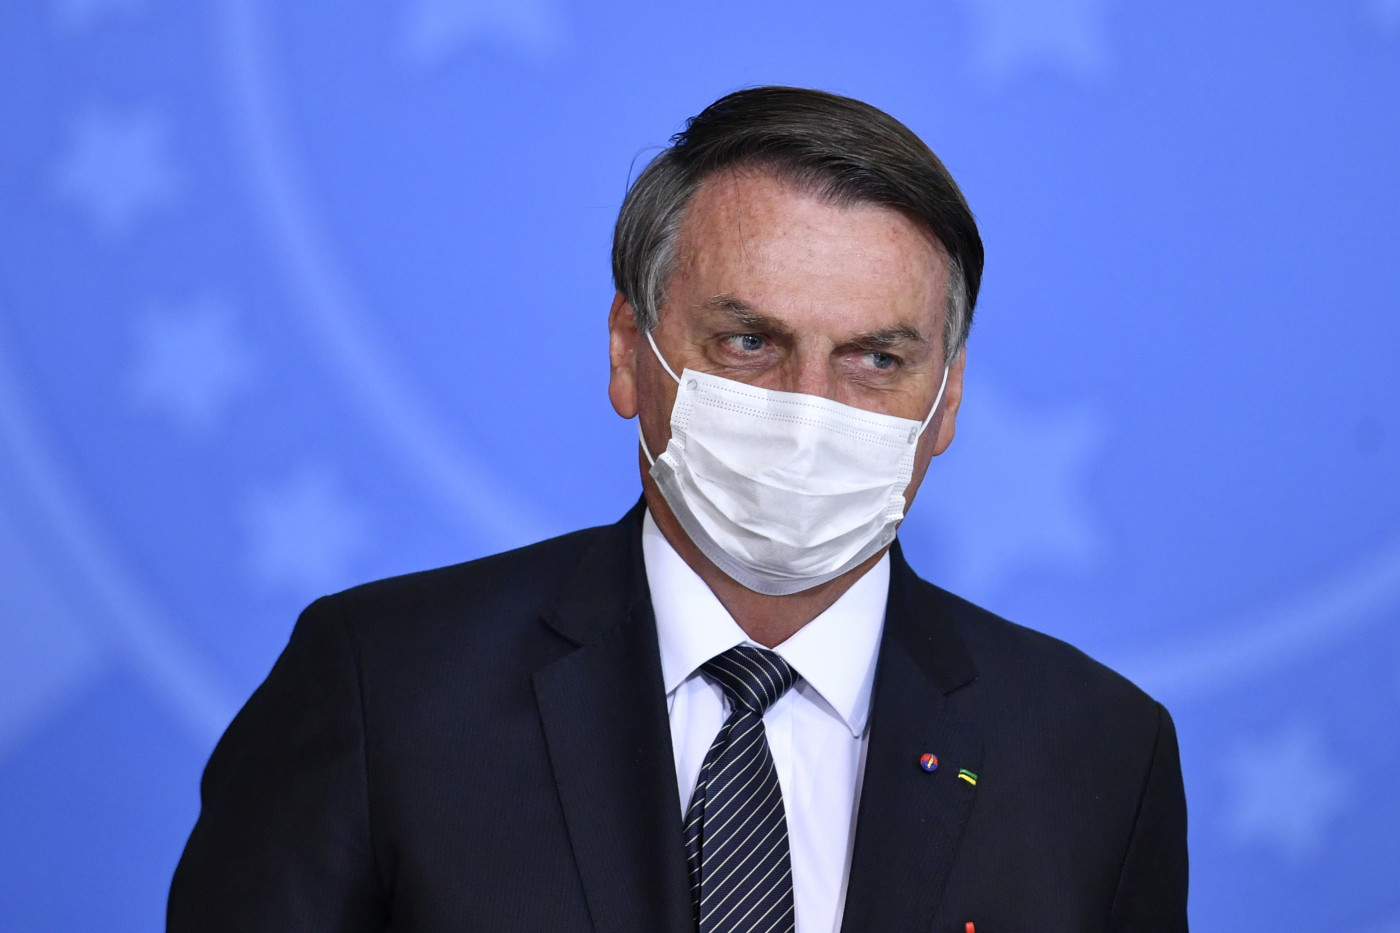 O presidente da República, Jair Bolsonaro, usa máscara de proteção branca e veste terno preto durante evento oficial